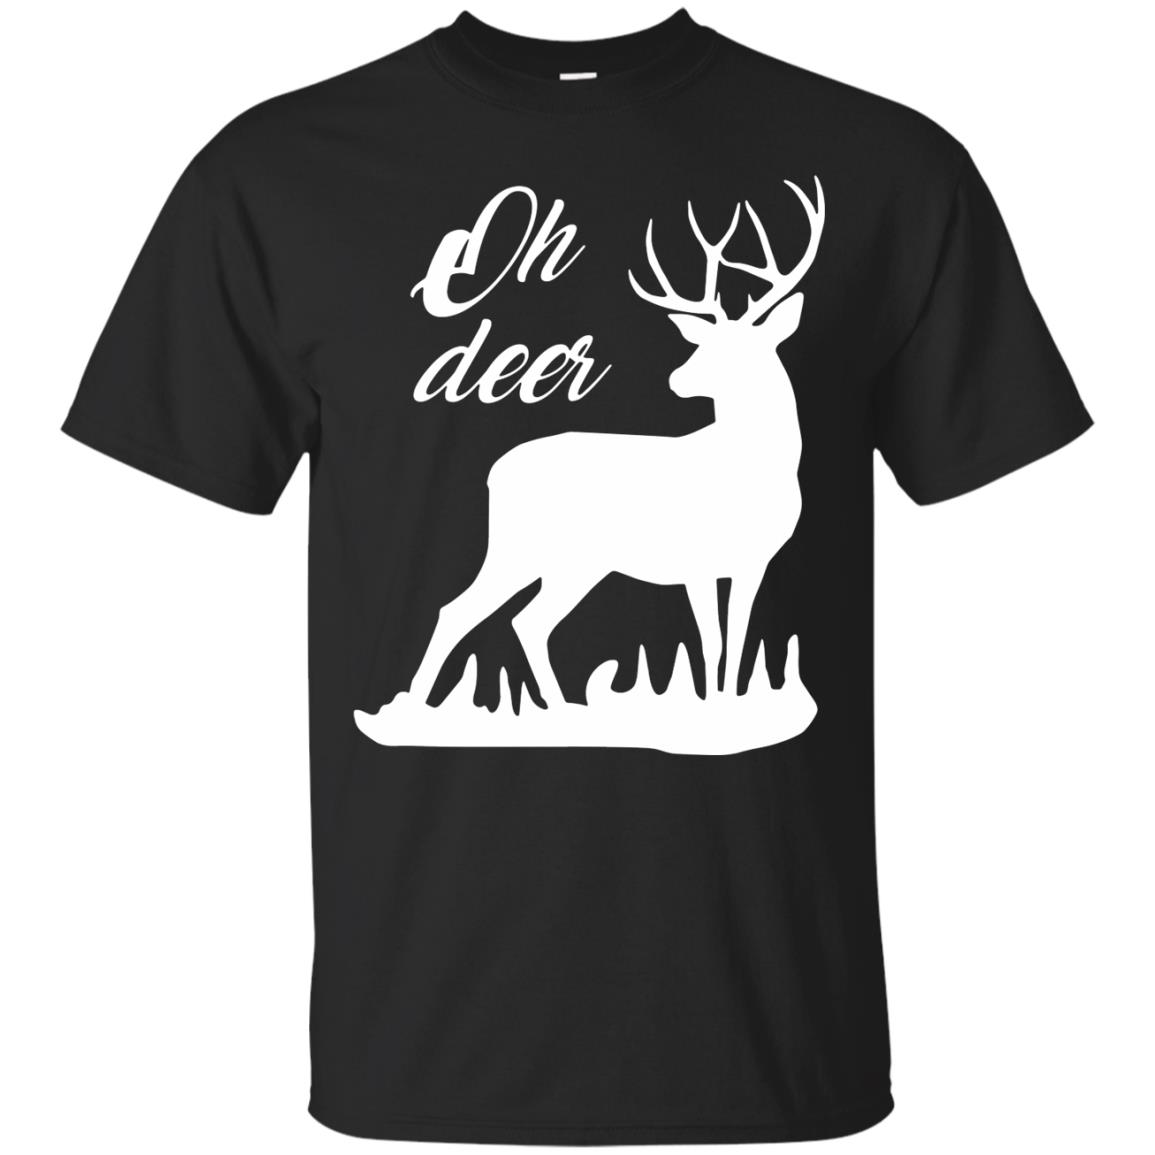 Oh Deer Shirts - 10% Off - FavorMerch